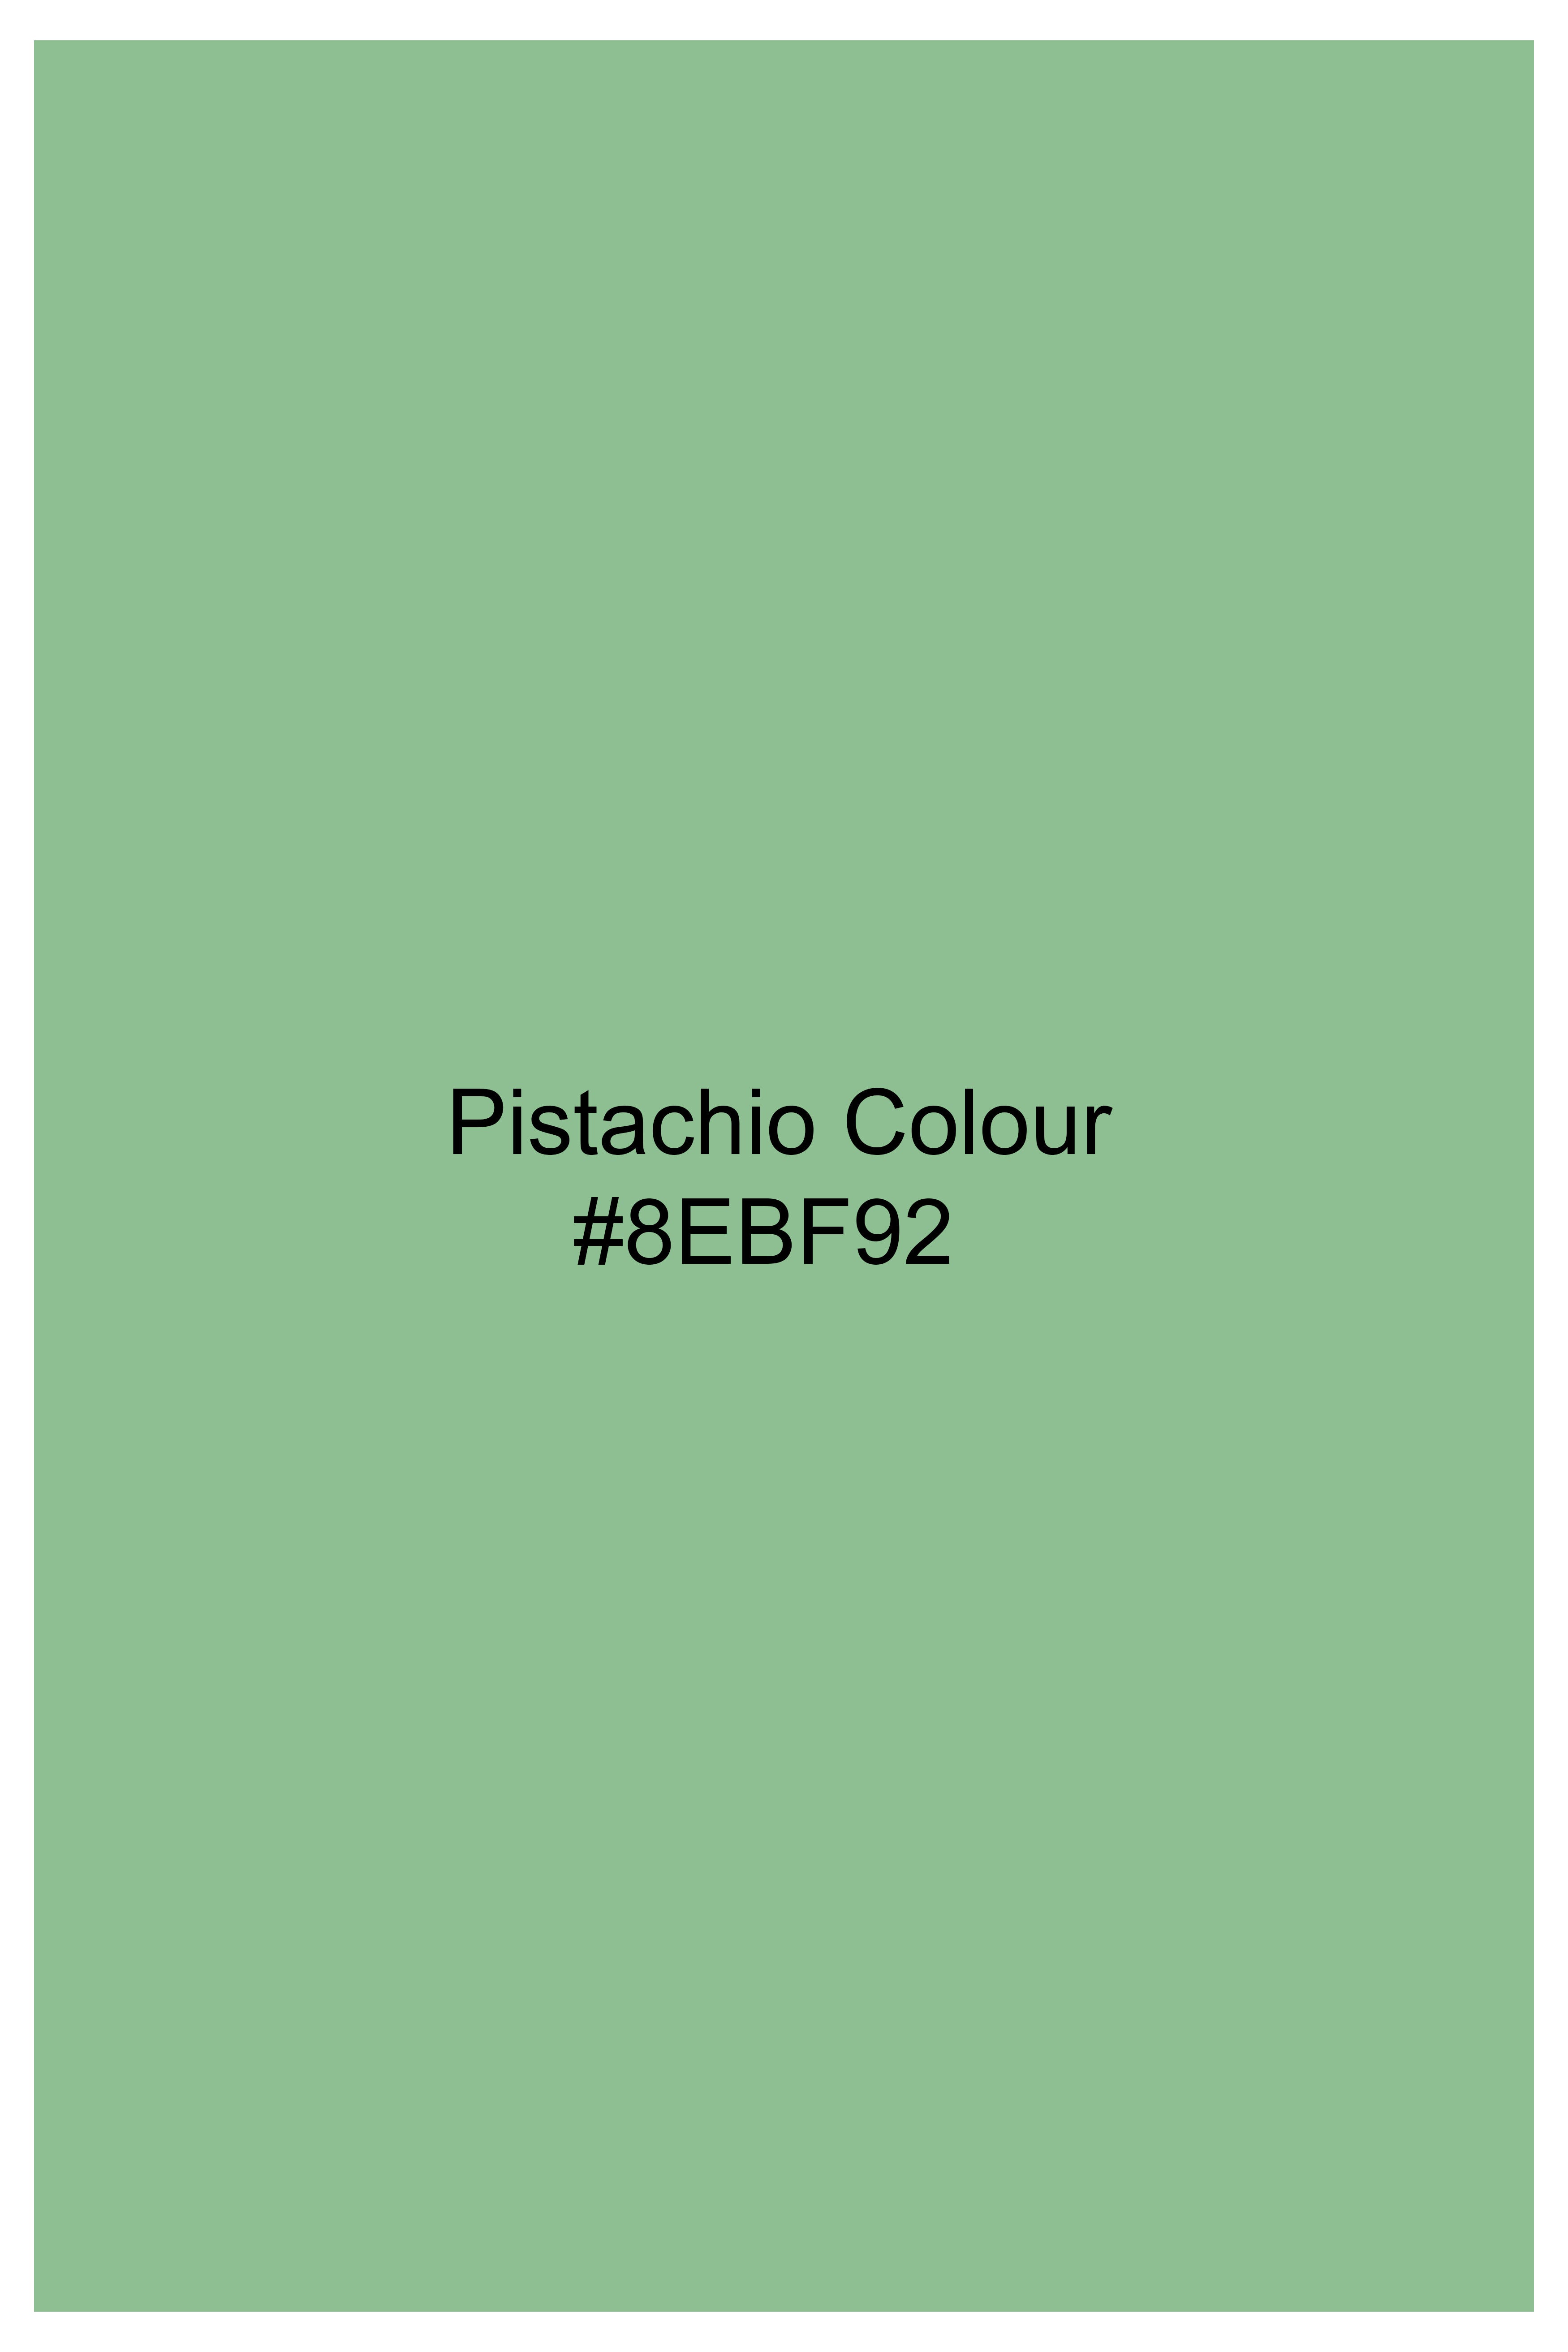 Pistachio Green Wool Rich Bandhgala Blazer BL2752-BG-36, BL2752-BG-38, BL2752-BG-40, BL2752-BG-42, BL2752-BG-44, BL2752-BG-46, BL2752-BG-48, BL2752-BG-50, BL2752-BG-52, BL2752-BG-54, BL2752-BG-56, BL2752-BG-58, BL2752-BG-60